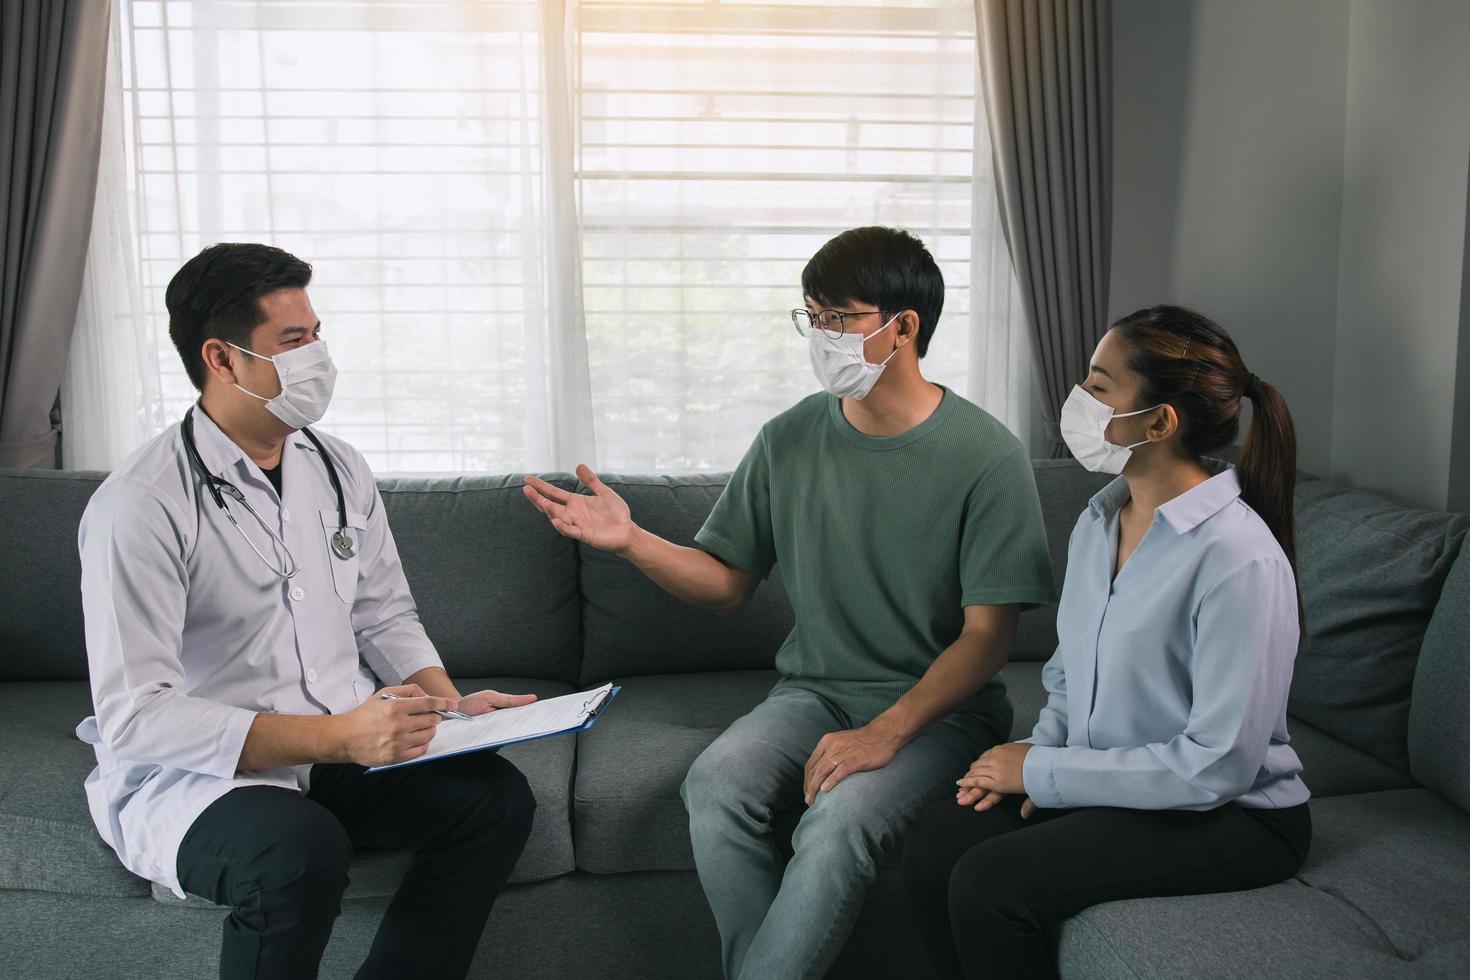 casal asiático está conversando com um médico sobre ter um bebê durante uma epidemia, além de pedir conselhos sobre como prevenir a doença durante a epidemia. foto